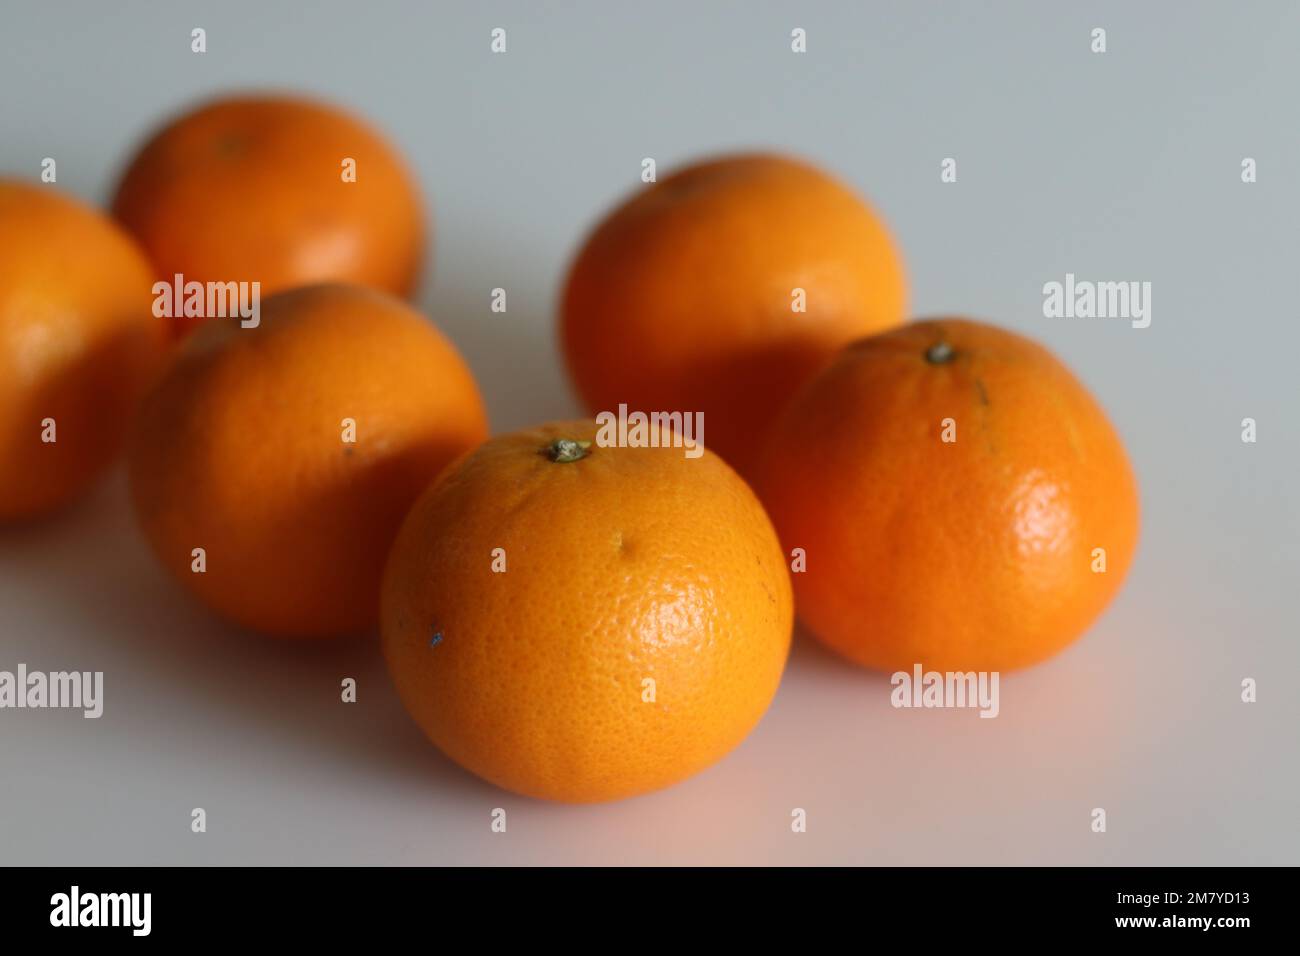 Malte ou Valencia Orange est un agrumes cultivé en Inde, communément appelé sangtra. Il s'agit d'une grande variété d'orange avec une surface lisse et tourbrée Banque D'Images